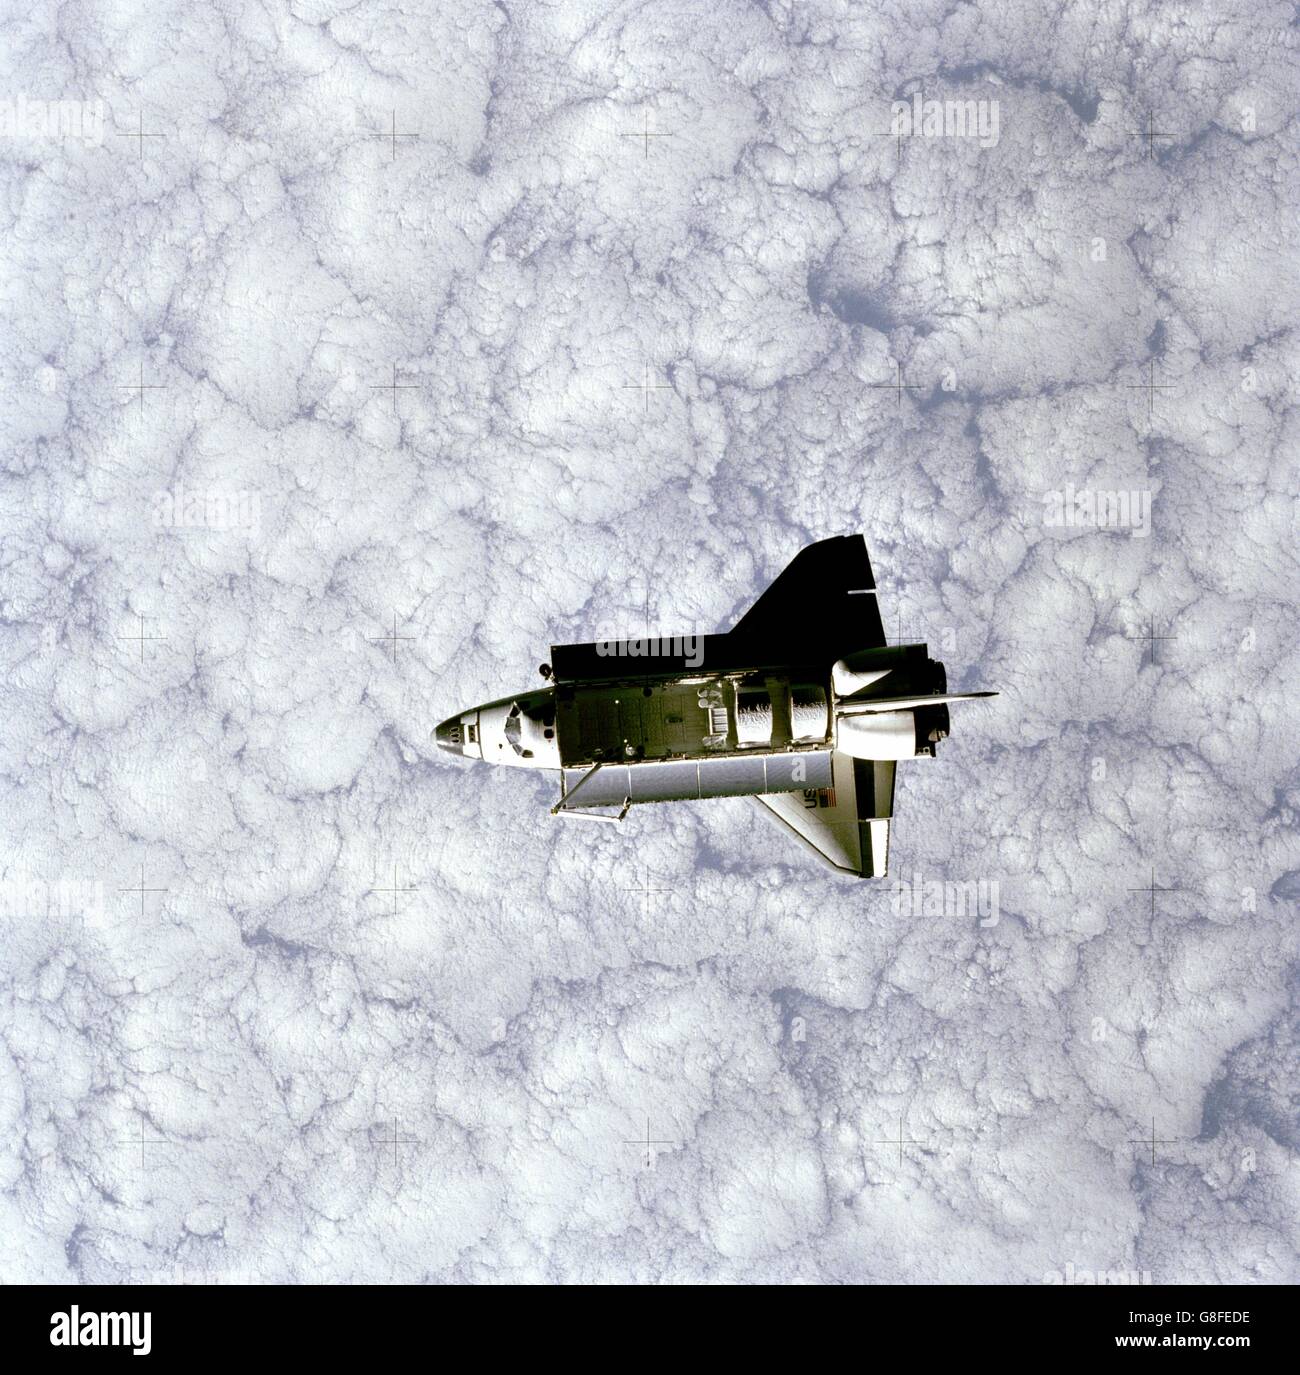 Lo Space Shuttle Orbiter Challenger STS-7 missione con il cargo bay aperta come esso orbita intorno alla terra coperto di nuvole Giugno 22, 1983. L'immagine è stata presa dallo spazio Pallet Satellite. Foto Stock